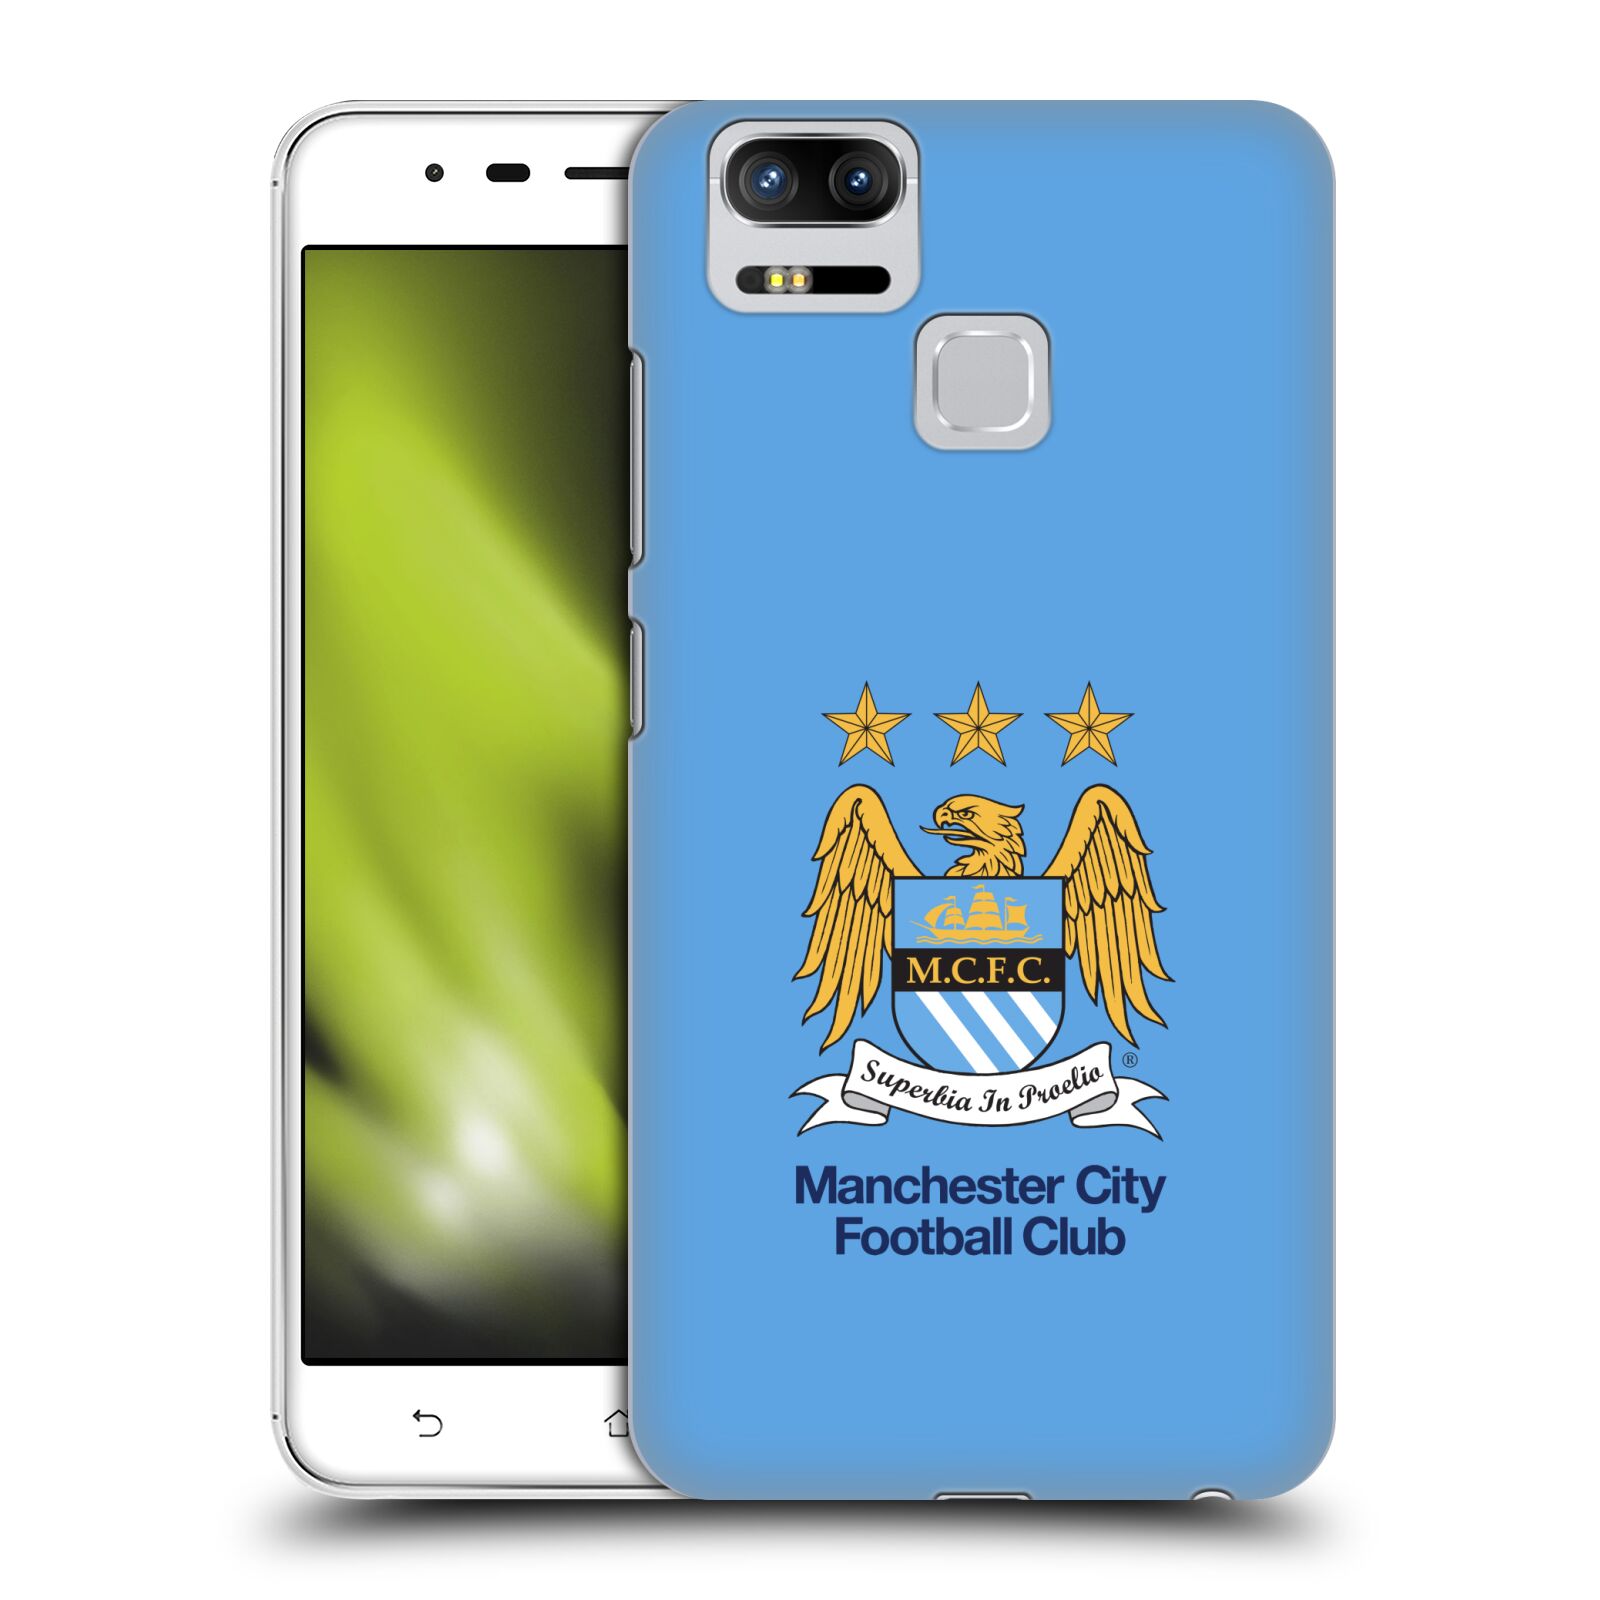 HEAD CASE plastový obal na mobil Asus Zenfone 3 Zoom ZE553KL Fotbalový klub Manchester City nebesky modrá pozadí velký znak pták